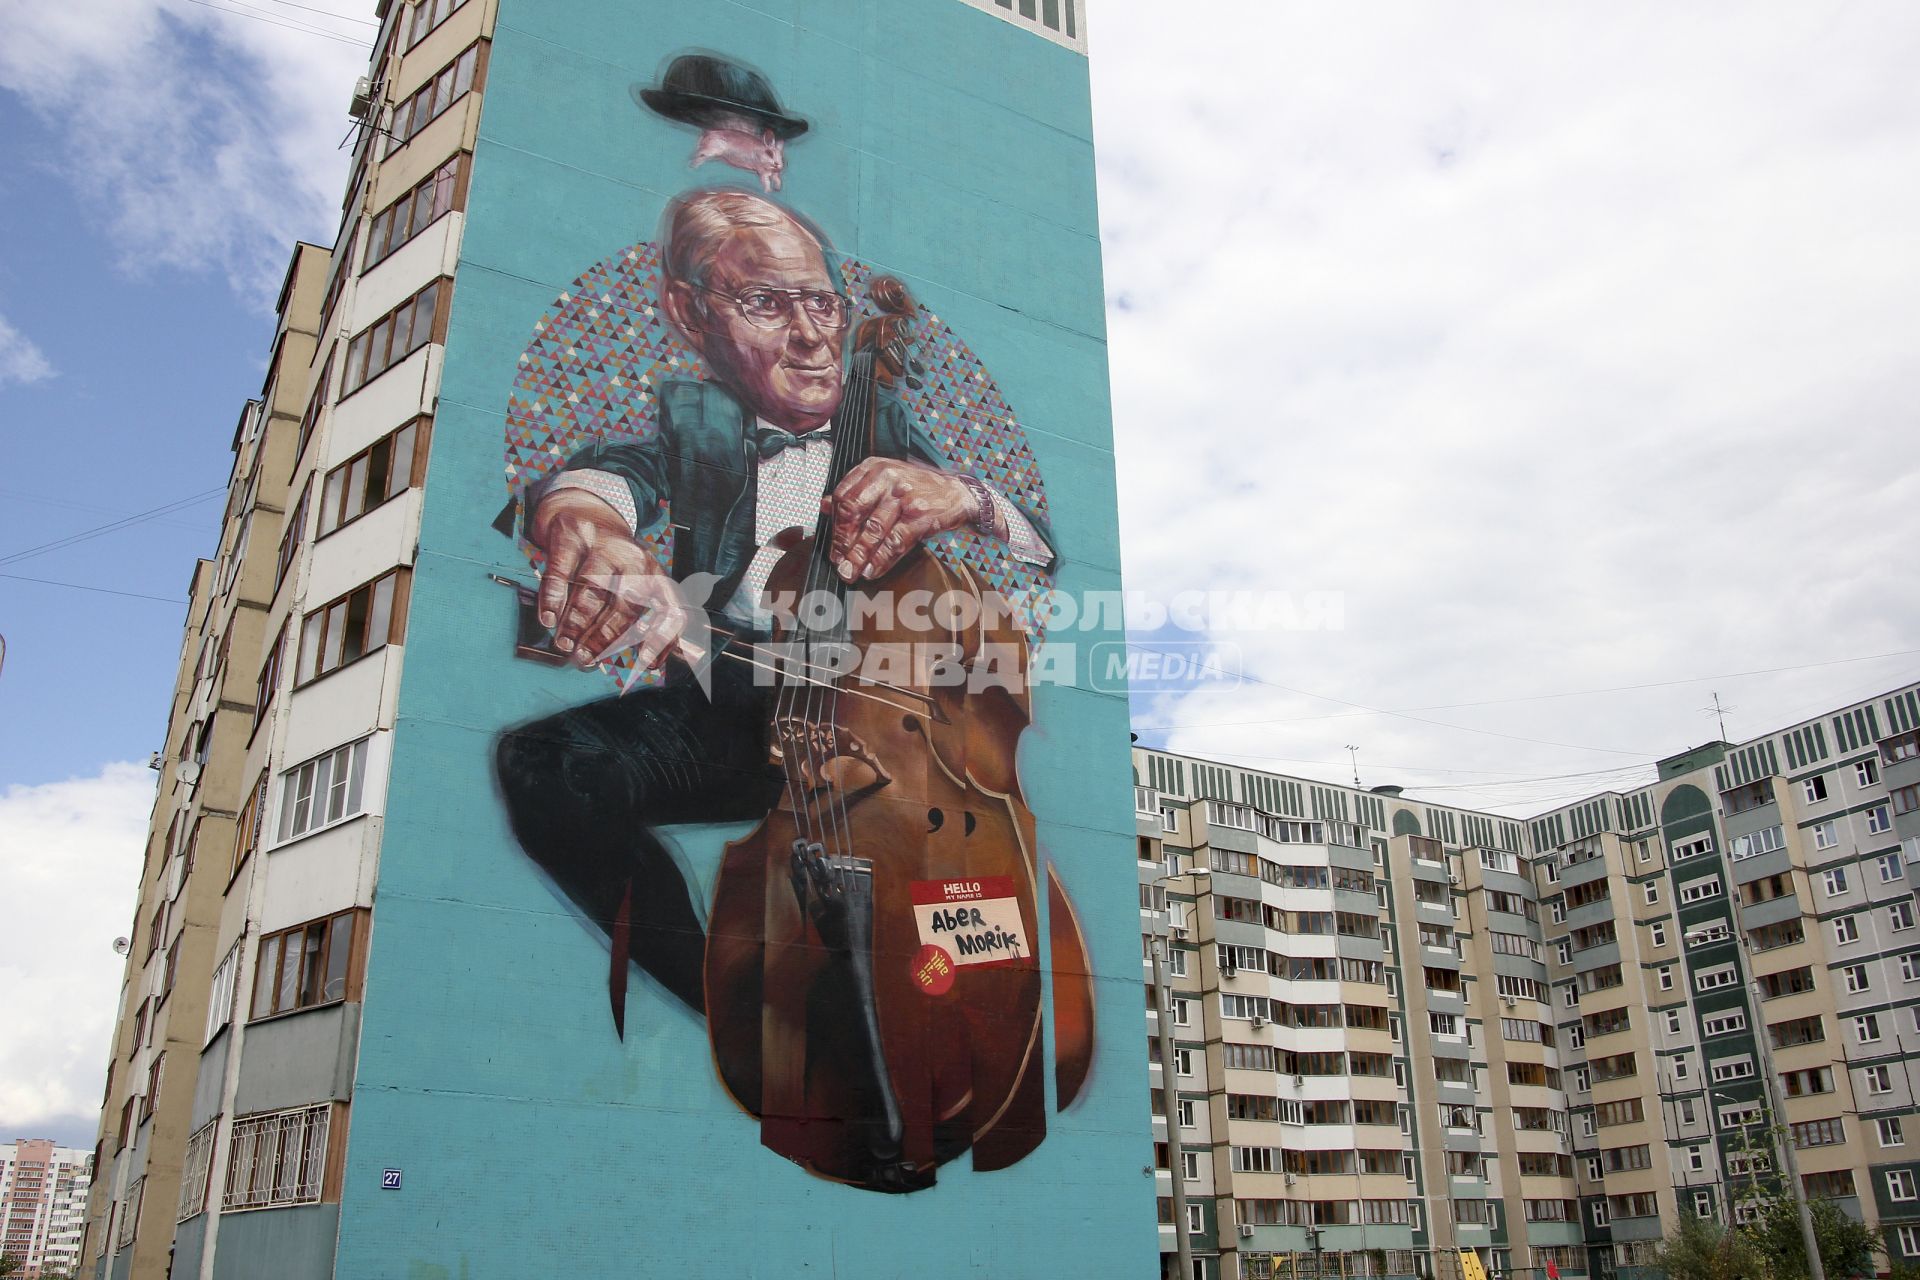 Международный фестиваль граффити в Казани посетили художники из Испании, Германии и Польши. На снимке: На стене многоквартирного дома изображен абстрактный виолончелист.